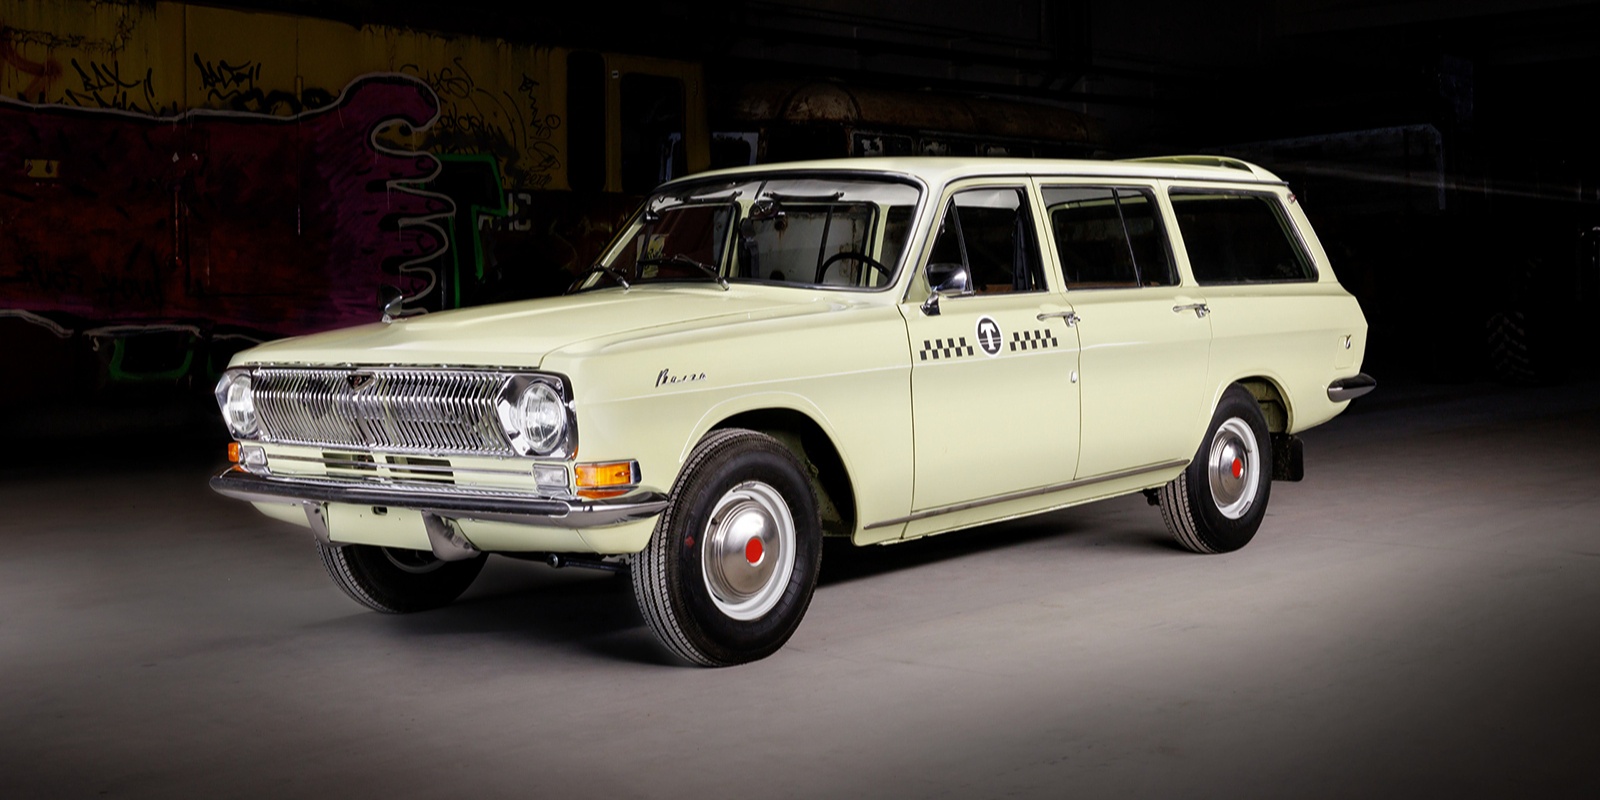 Такси 1972 года выпуска пополнило коллекцию музея транспорта Москвы